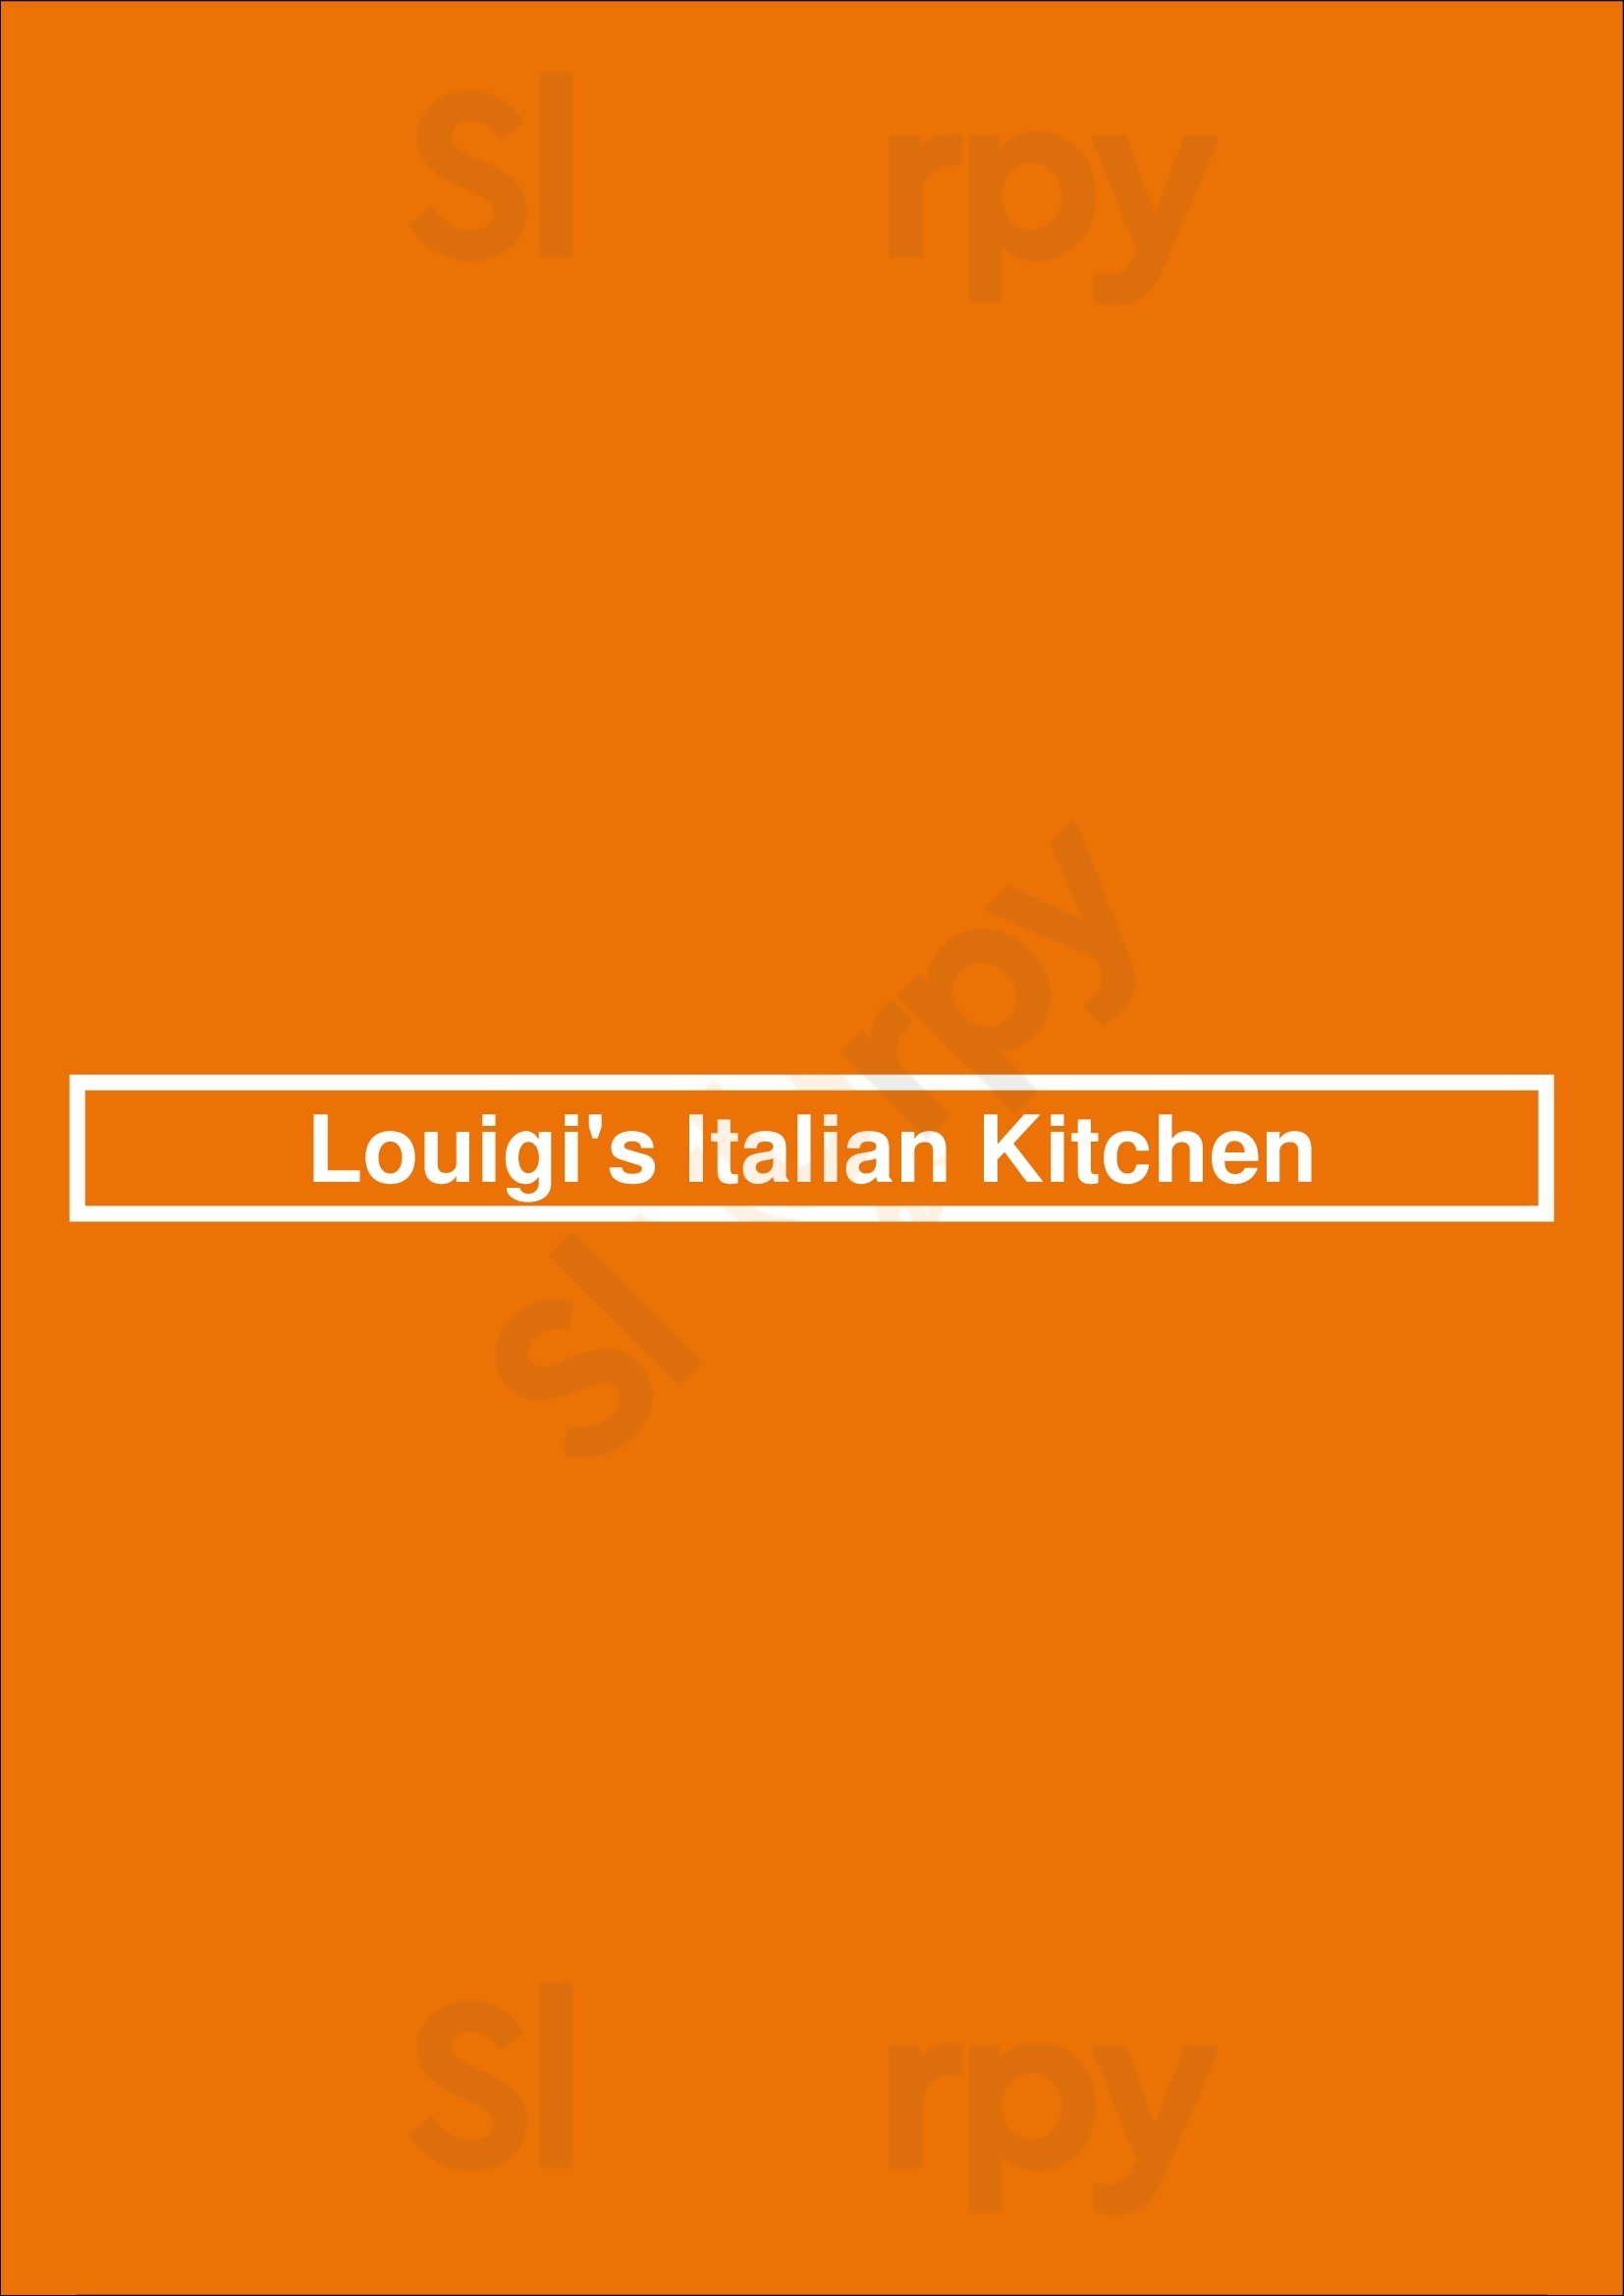 Louigi's Italian Kitchen Los Angeles Menu - 1